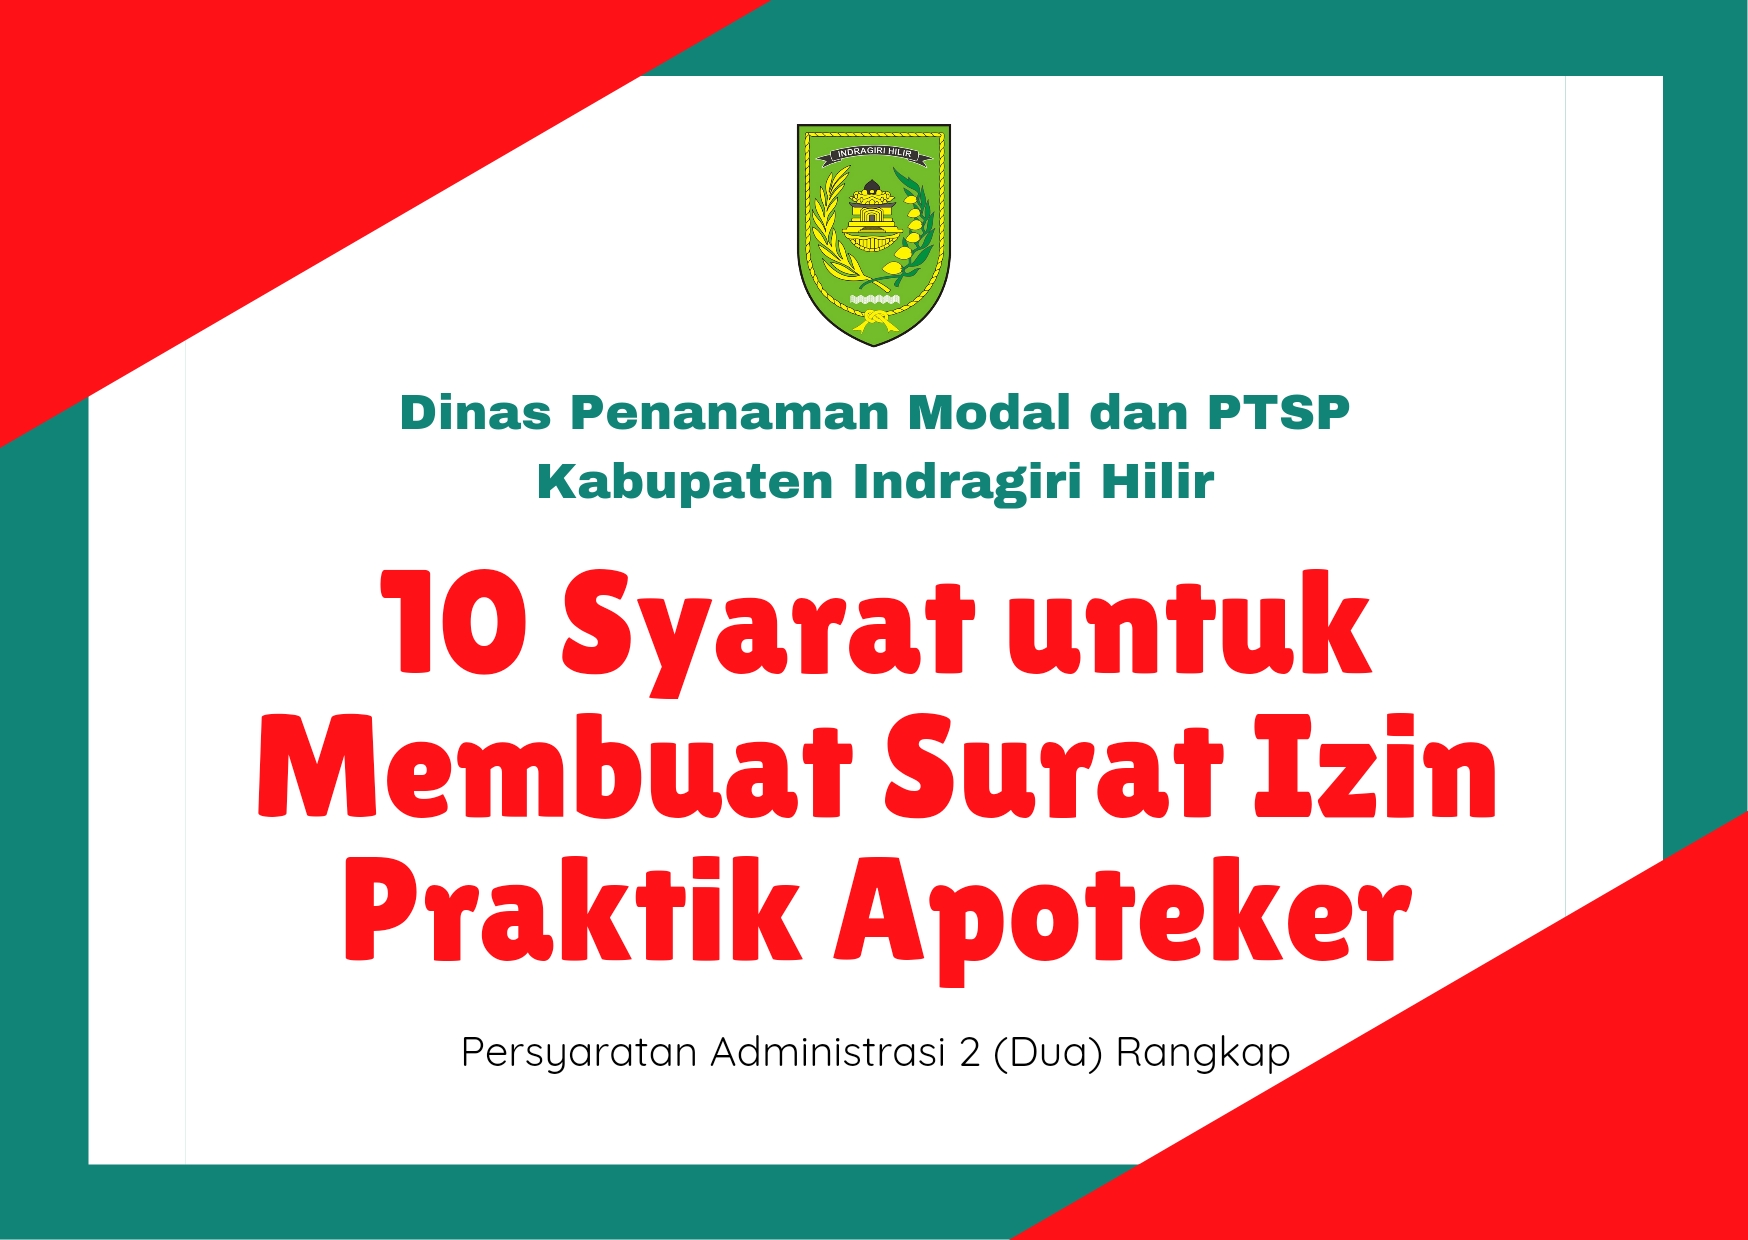 10 Syarat dari DPMPTSP Inhil untuk Membuat Surat Izin Praktik Apoteker